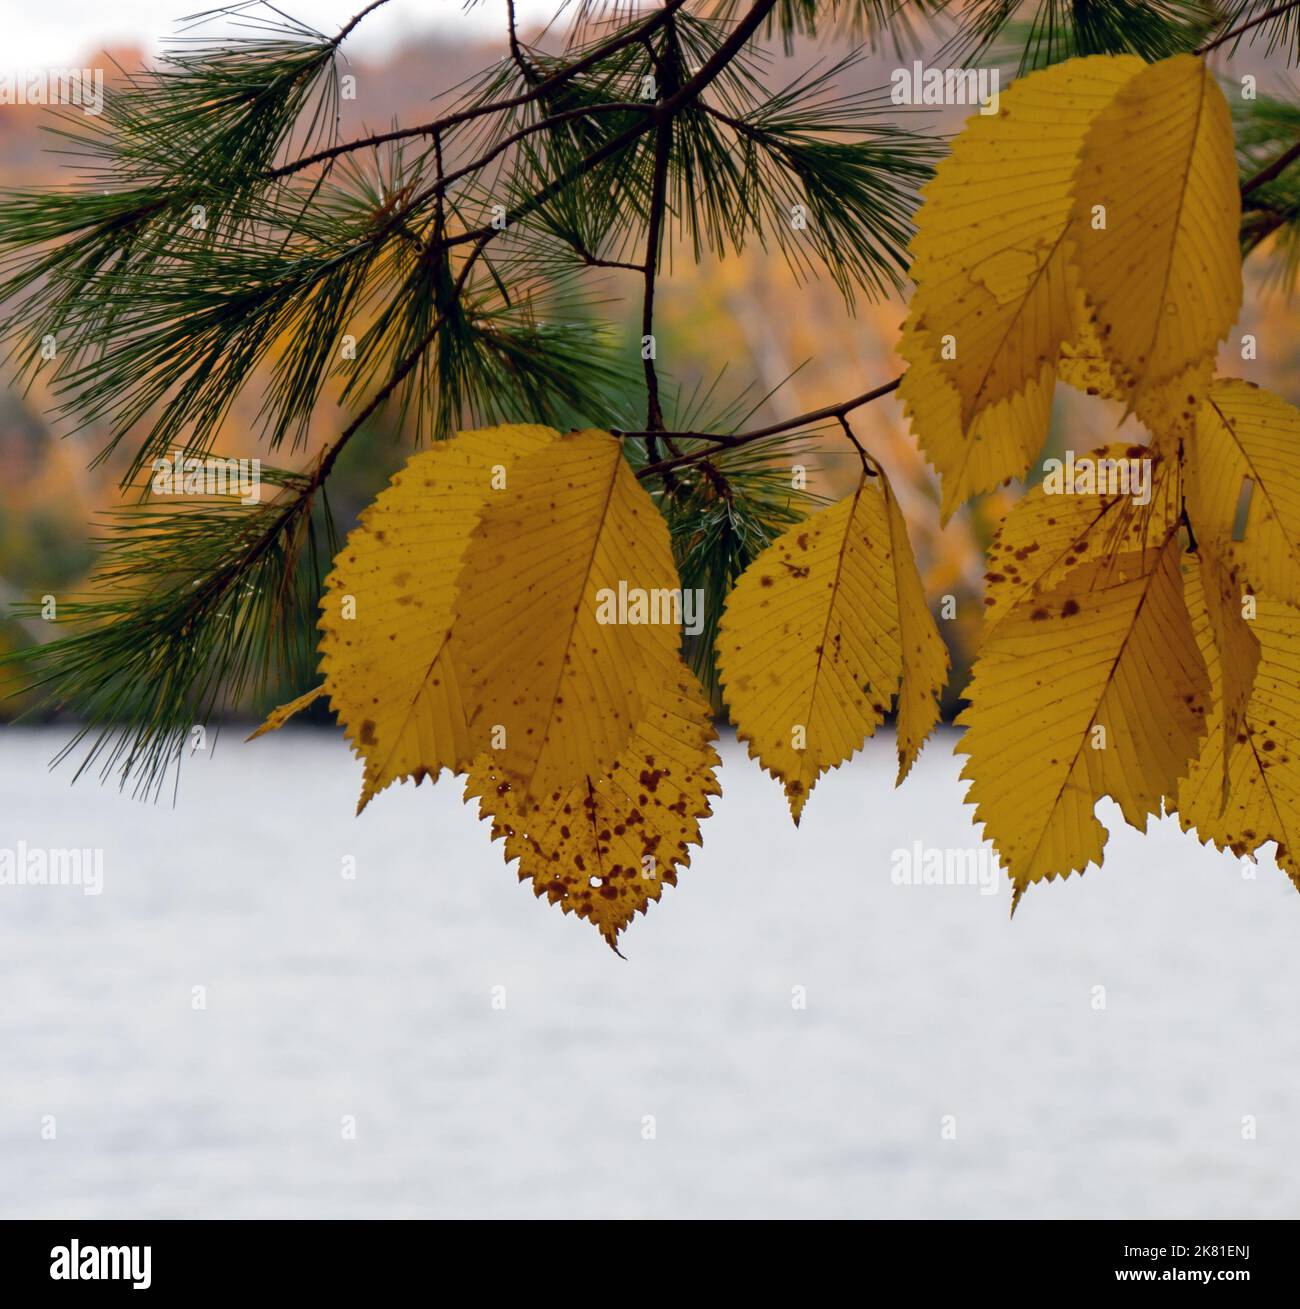 Nahaufnahme von gelben Herbstblättern und einem Kiefernzweig, der an einem kalten Oktobertag an einem Flussufer wächst, mit einem Fluss und Wald im Hintergrund. Stockfoto